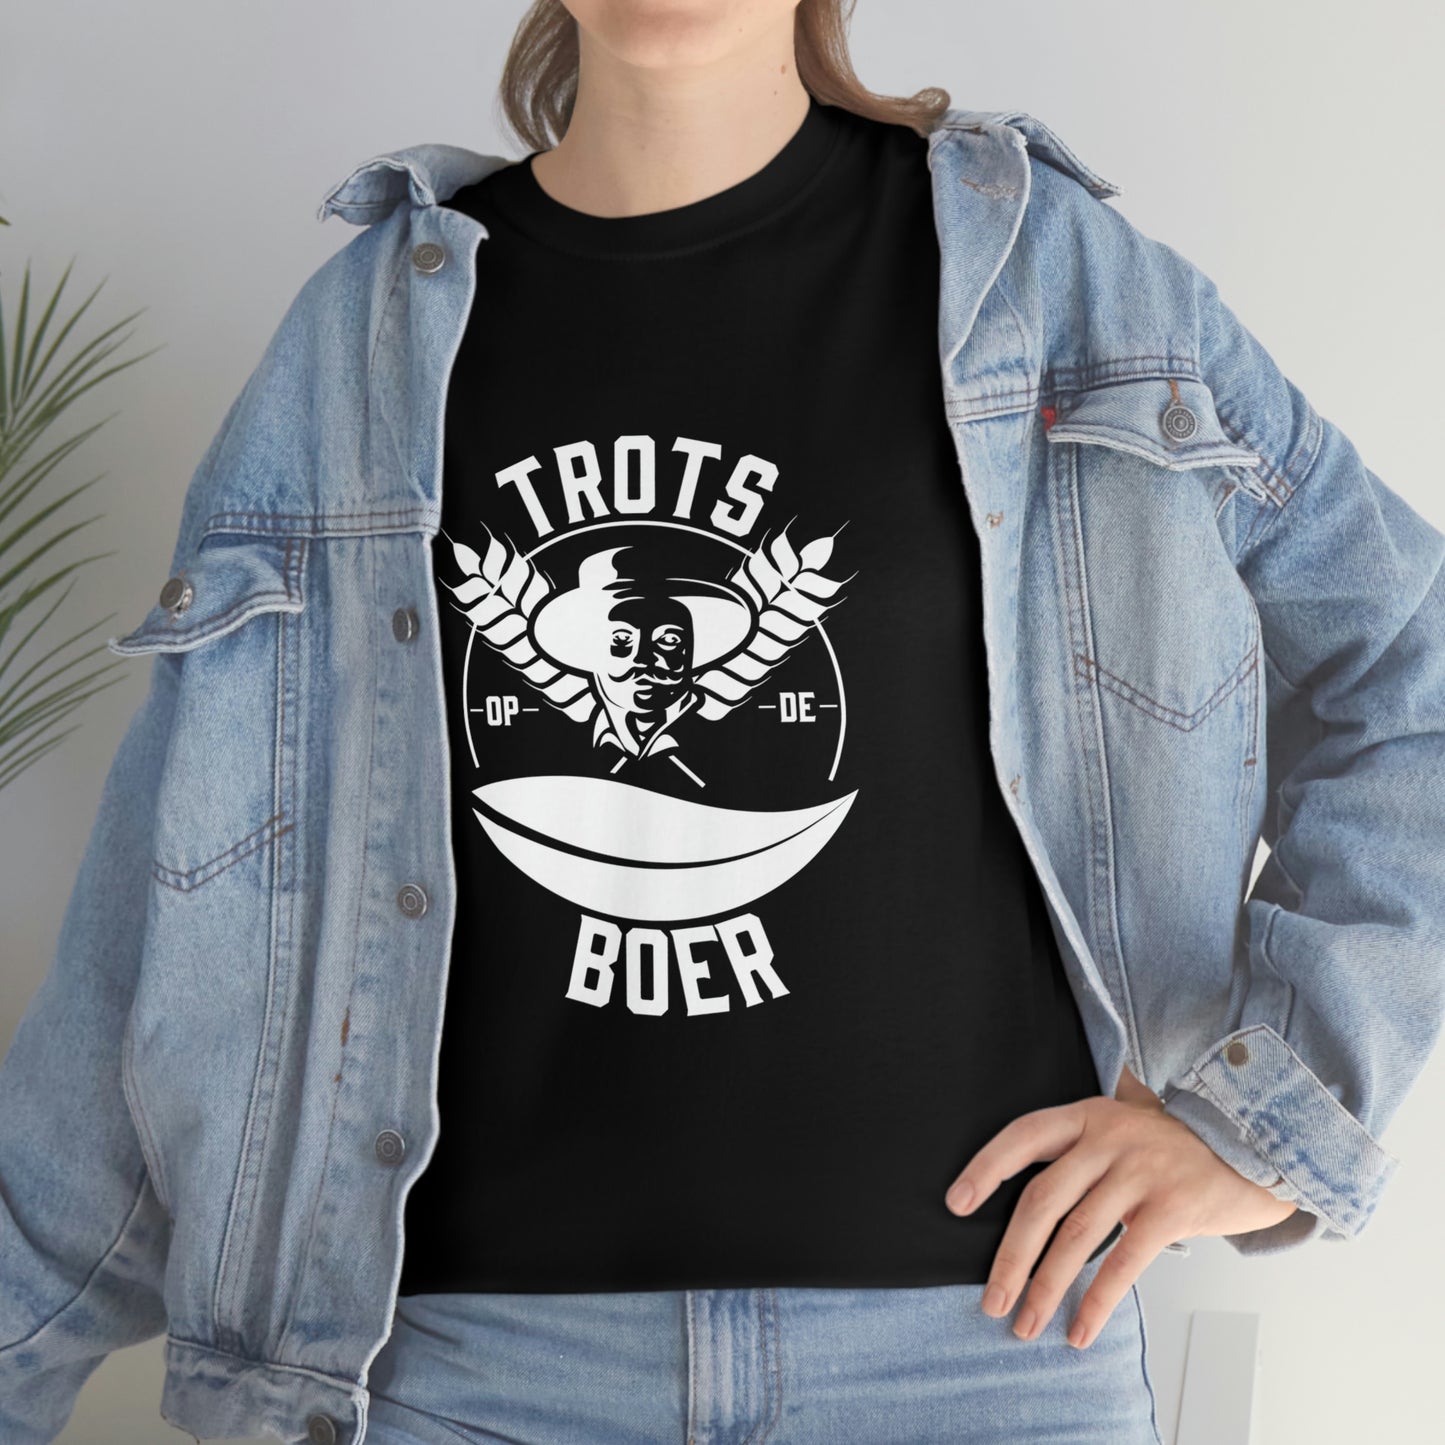 Trots op de Boer - T-Shirt door BoerenArtikelen